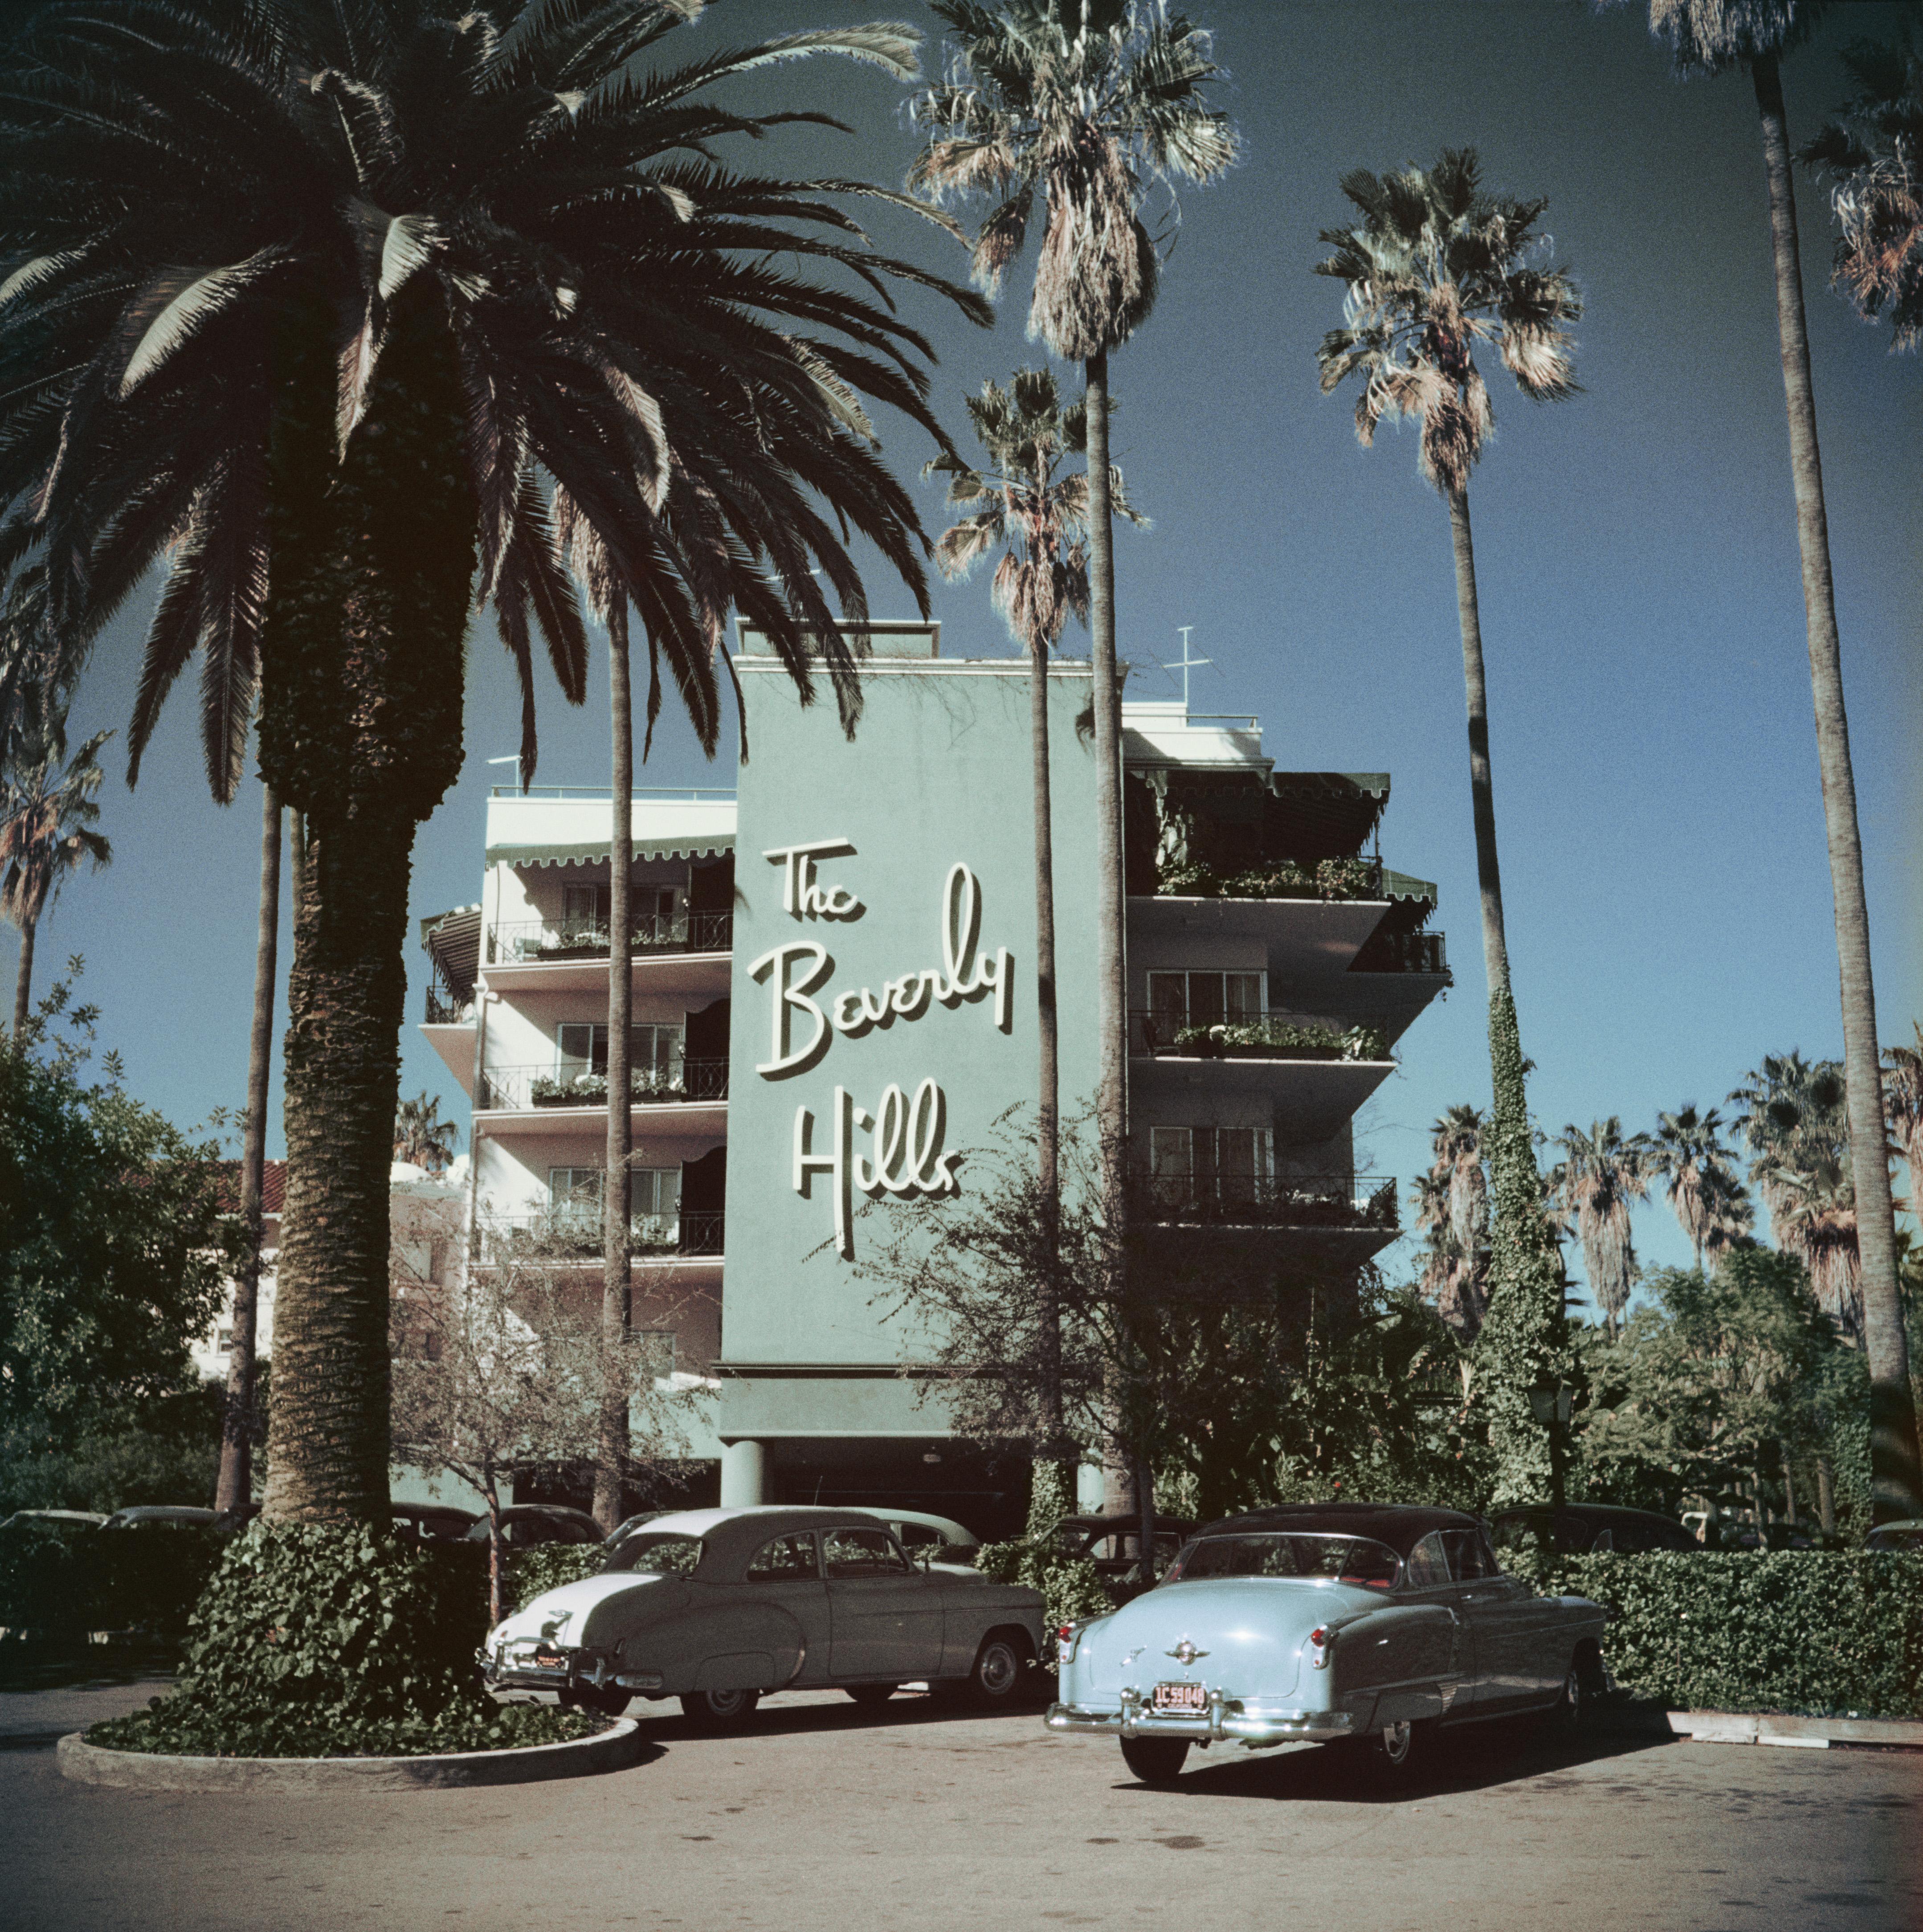 Slim Aarons
Hôtel Beverly Hilles, 1957
C imprimé
Édition de 150 exemplaires numérotés et estampillés par la succession 
avec certificat d'authenticité

Voitures garées devant le Beverly Hills Hotel sur Sunset Boulevard en Californie, 1957.

Slim